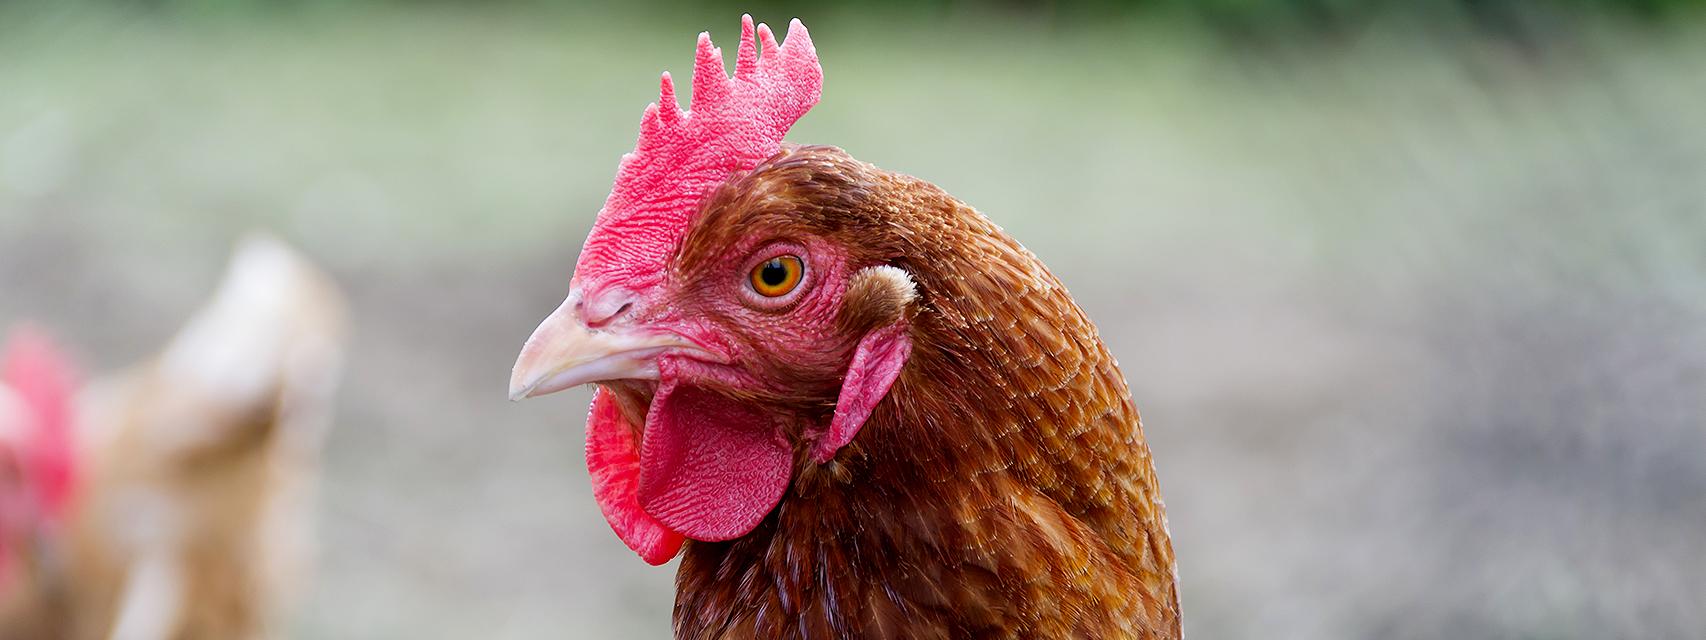 Ejemplar de un pollo campero de raza rubia, comercializado por Carrefour.